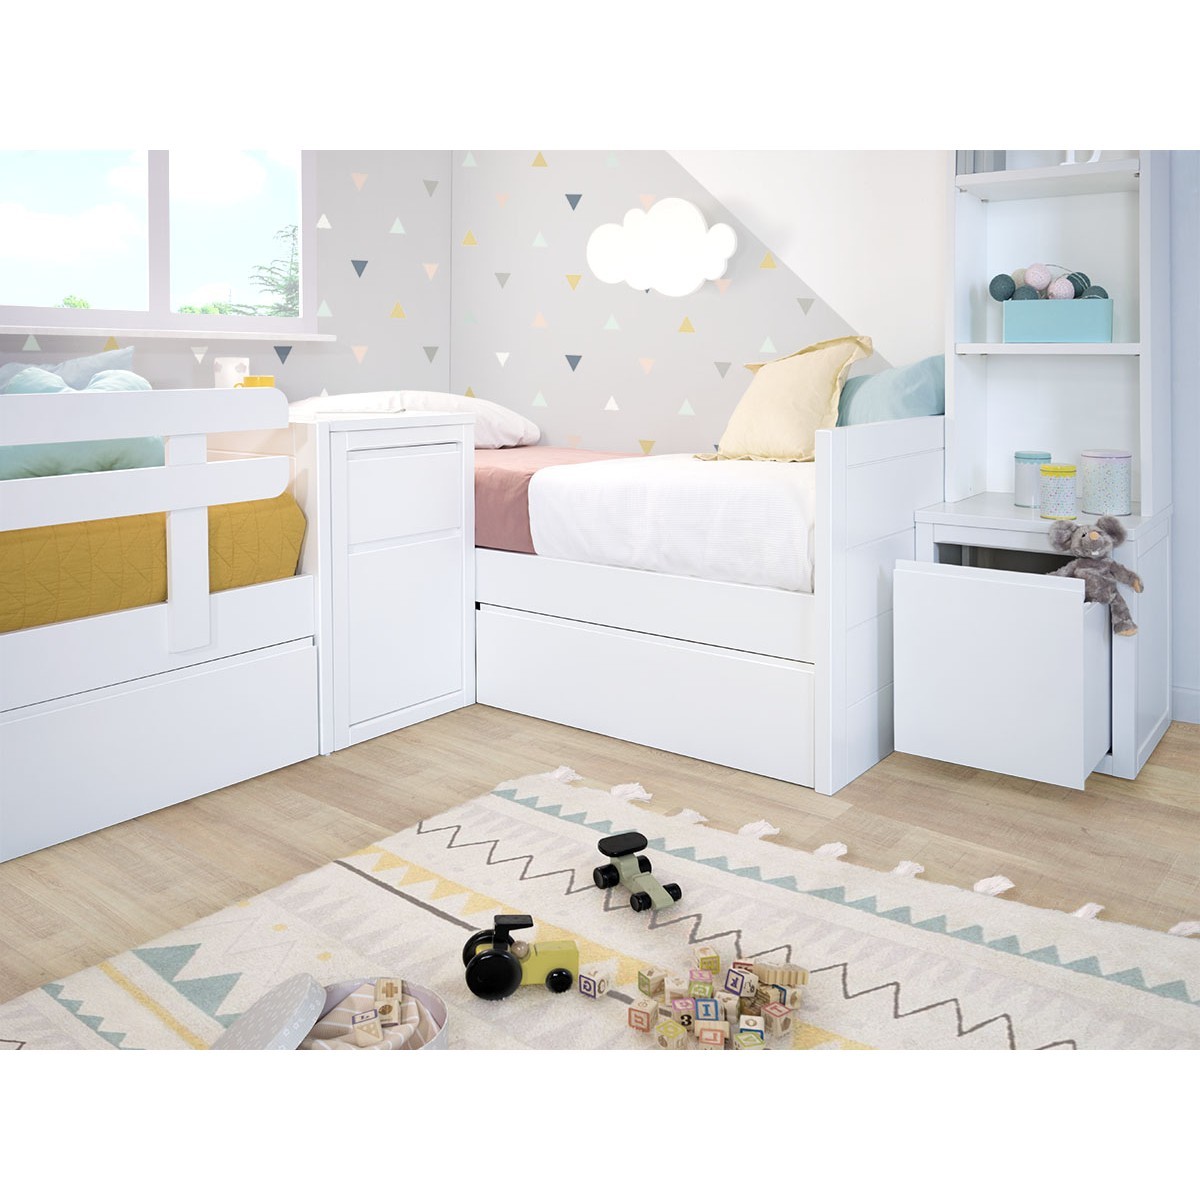 Applique murale Nuage - Pour chambre bébé enfant - Livraison gratuite